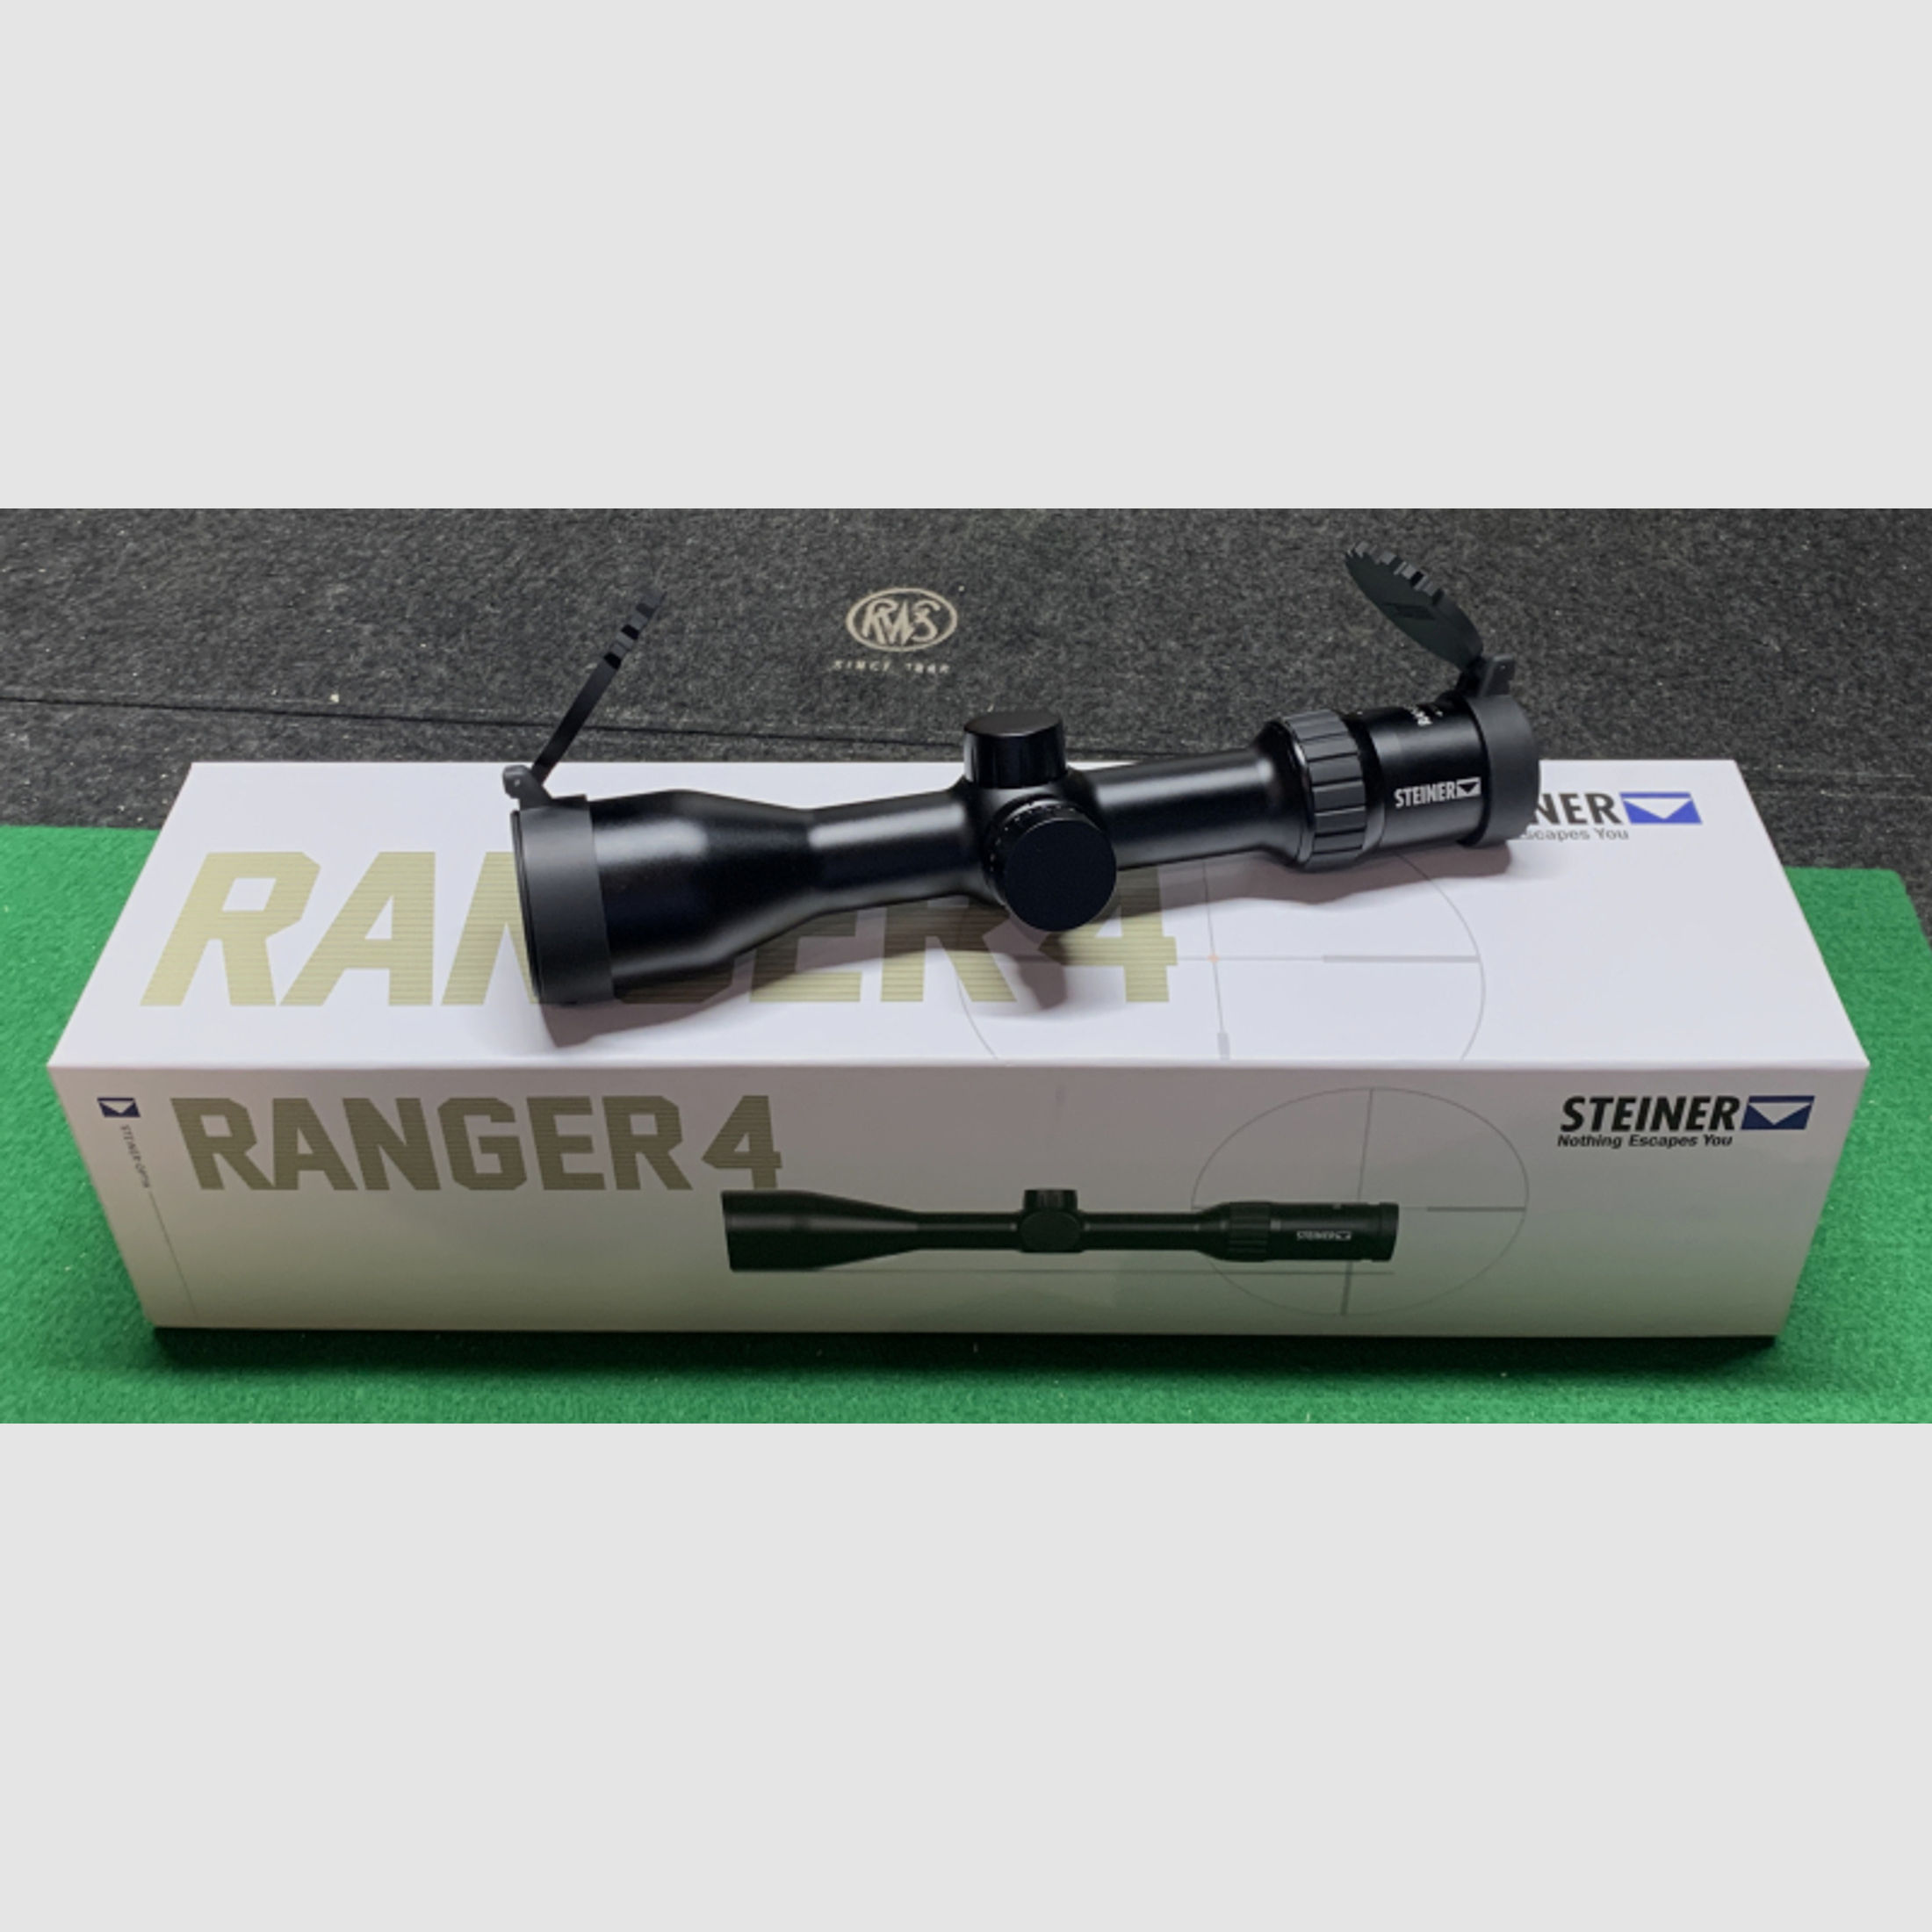 Neuheit---Steiner Ranger 4S 4-16x44 Leuchtabs. 4A-I, ultra kompakt Maße, nur 27,8cm Länge!